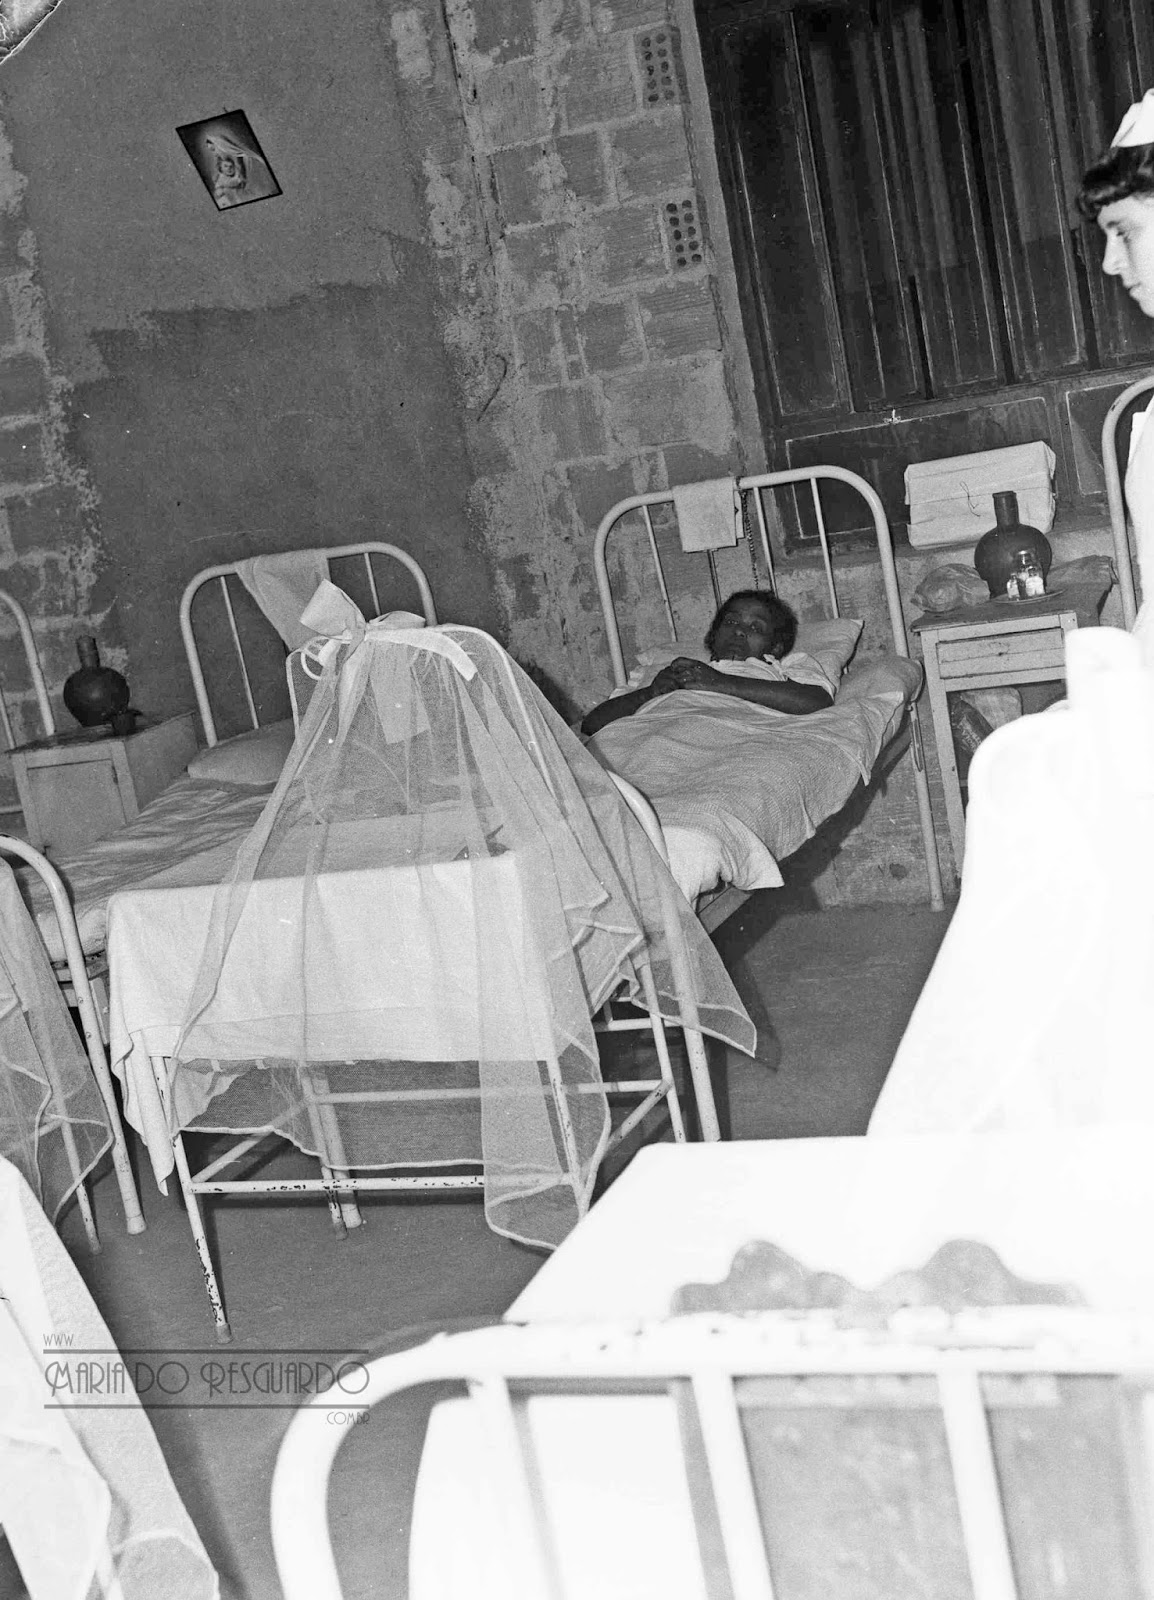 Foto em preto e branco do interior de um quarto de hospital com quatro camas enfileiradas, e em uma delas há uma mulher deitada.